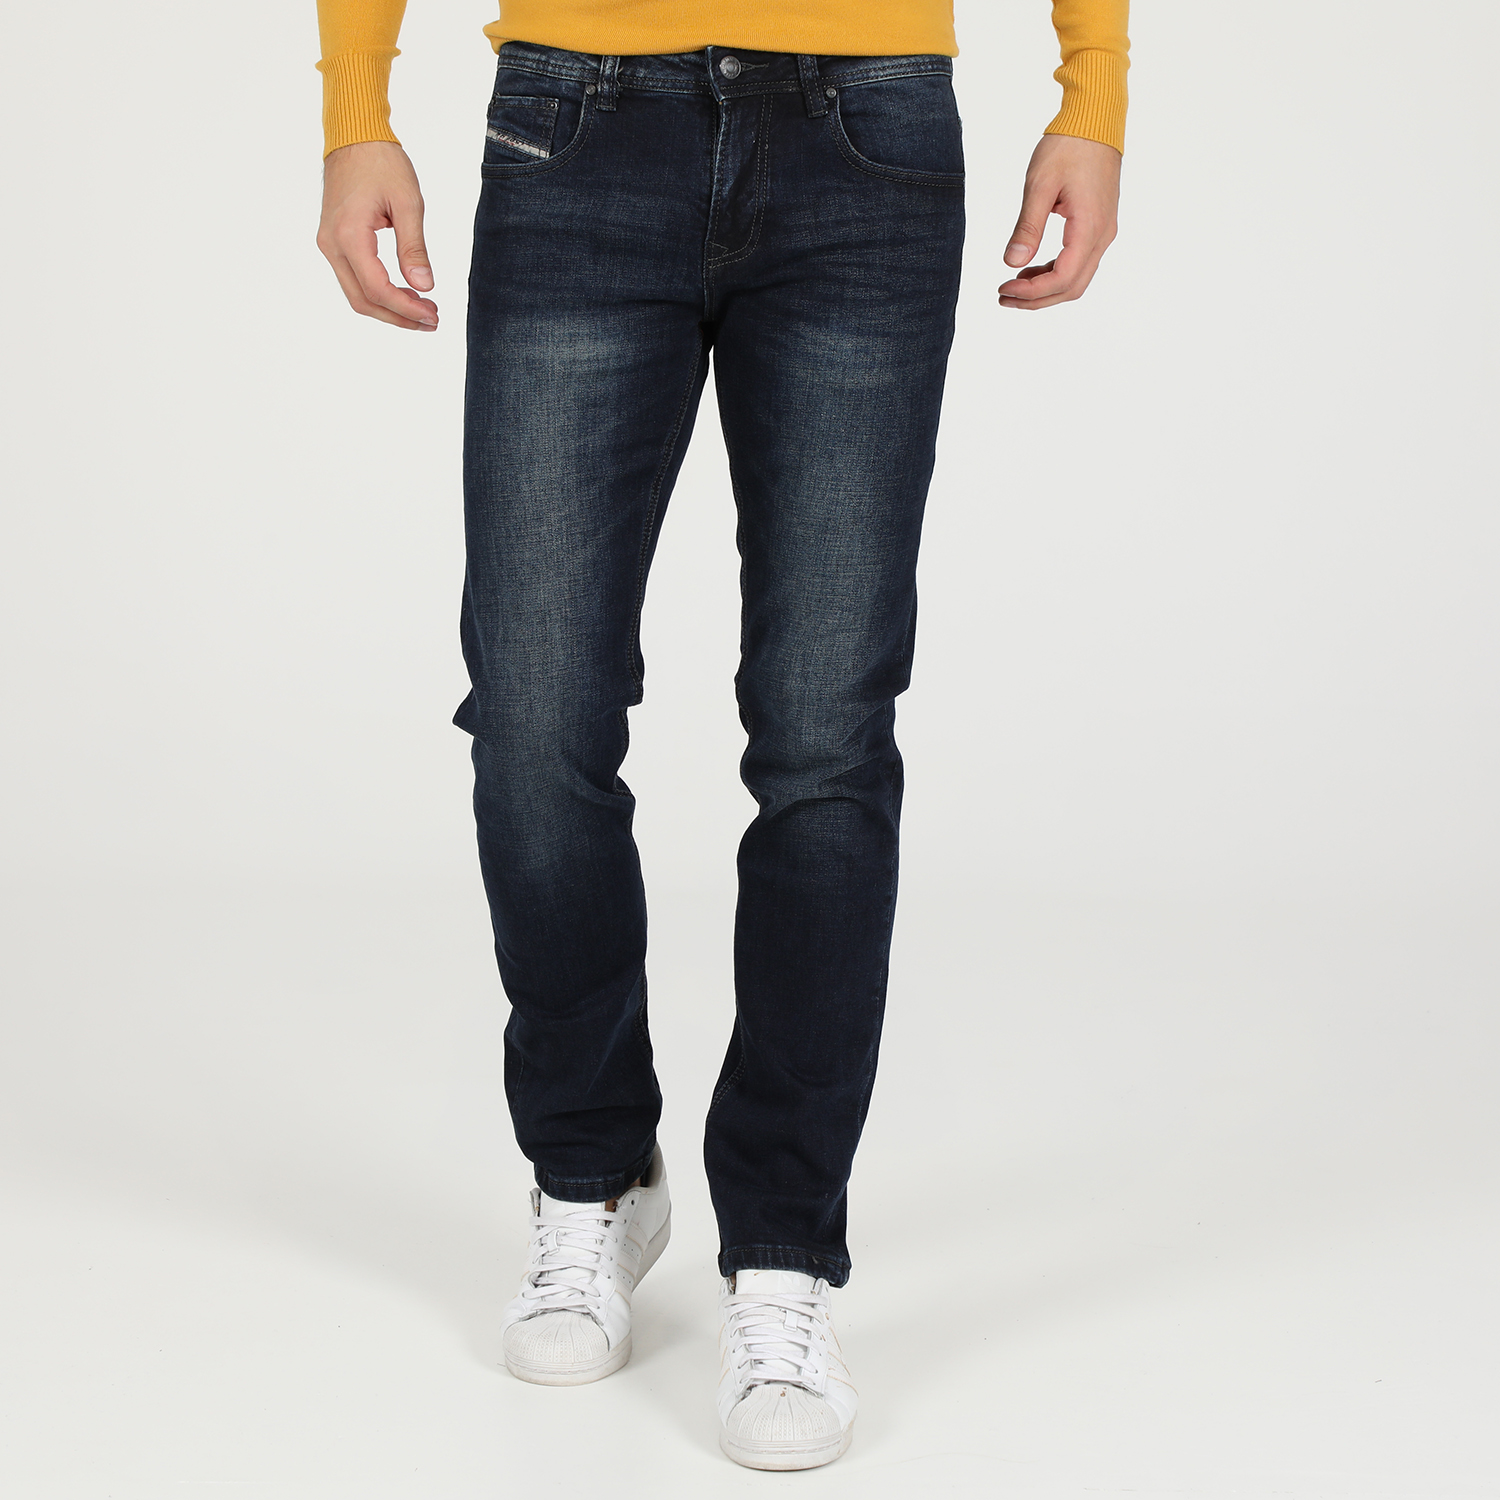 Ανδρικά/Ρούχα/Τζίν/Straight MARTIN & CO - Ανδρικό jean παντελόνι MARTIN & CO μπλε